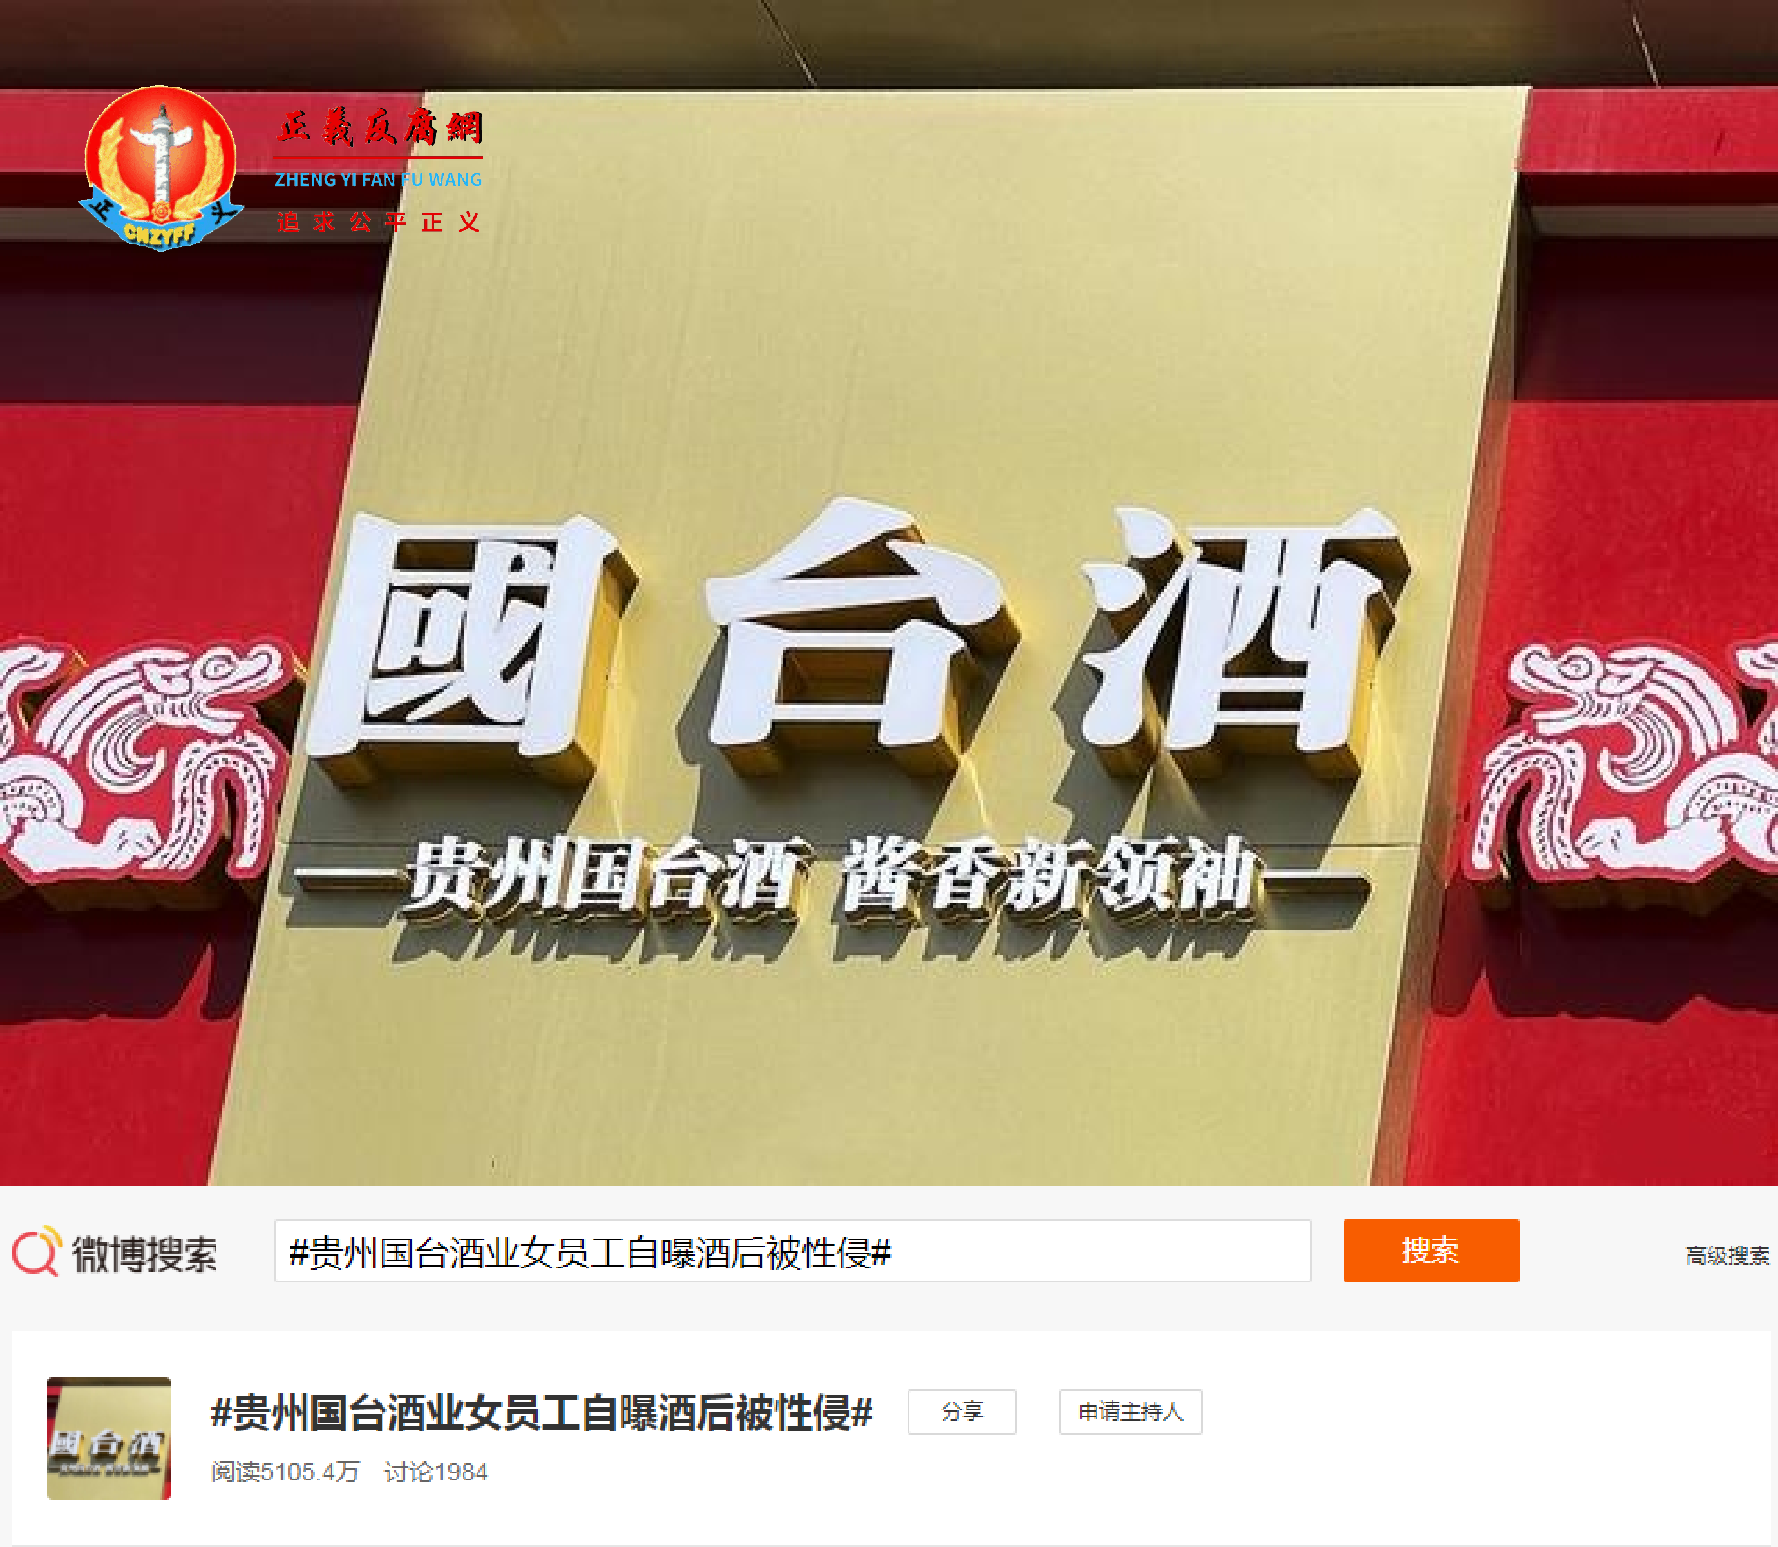 #贵州国台酒业女员工自曝酒后被性侵# 微博热搜，阅读量达5105.4万。.png